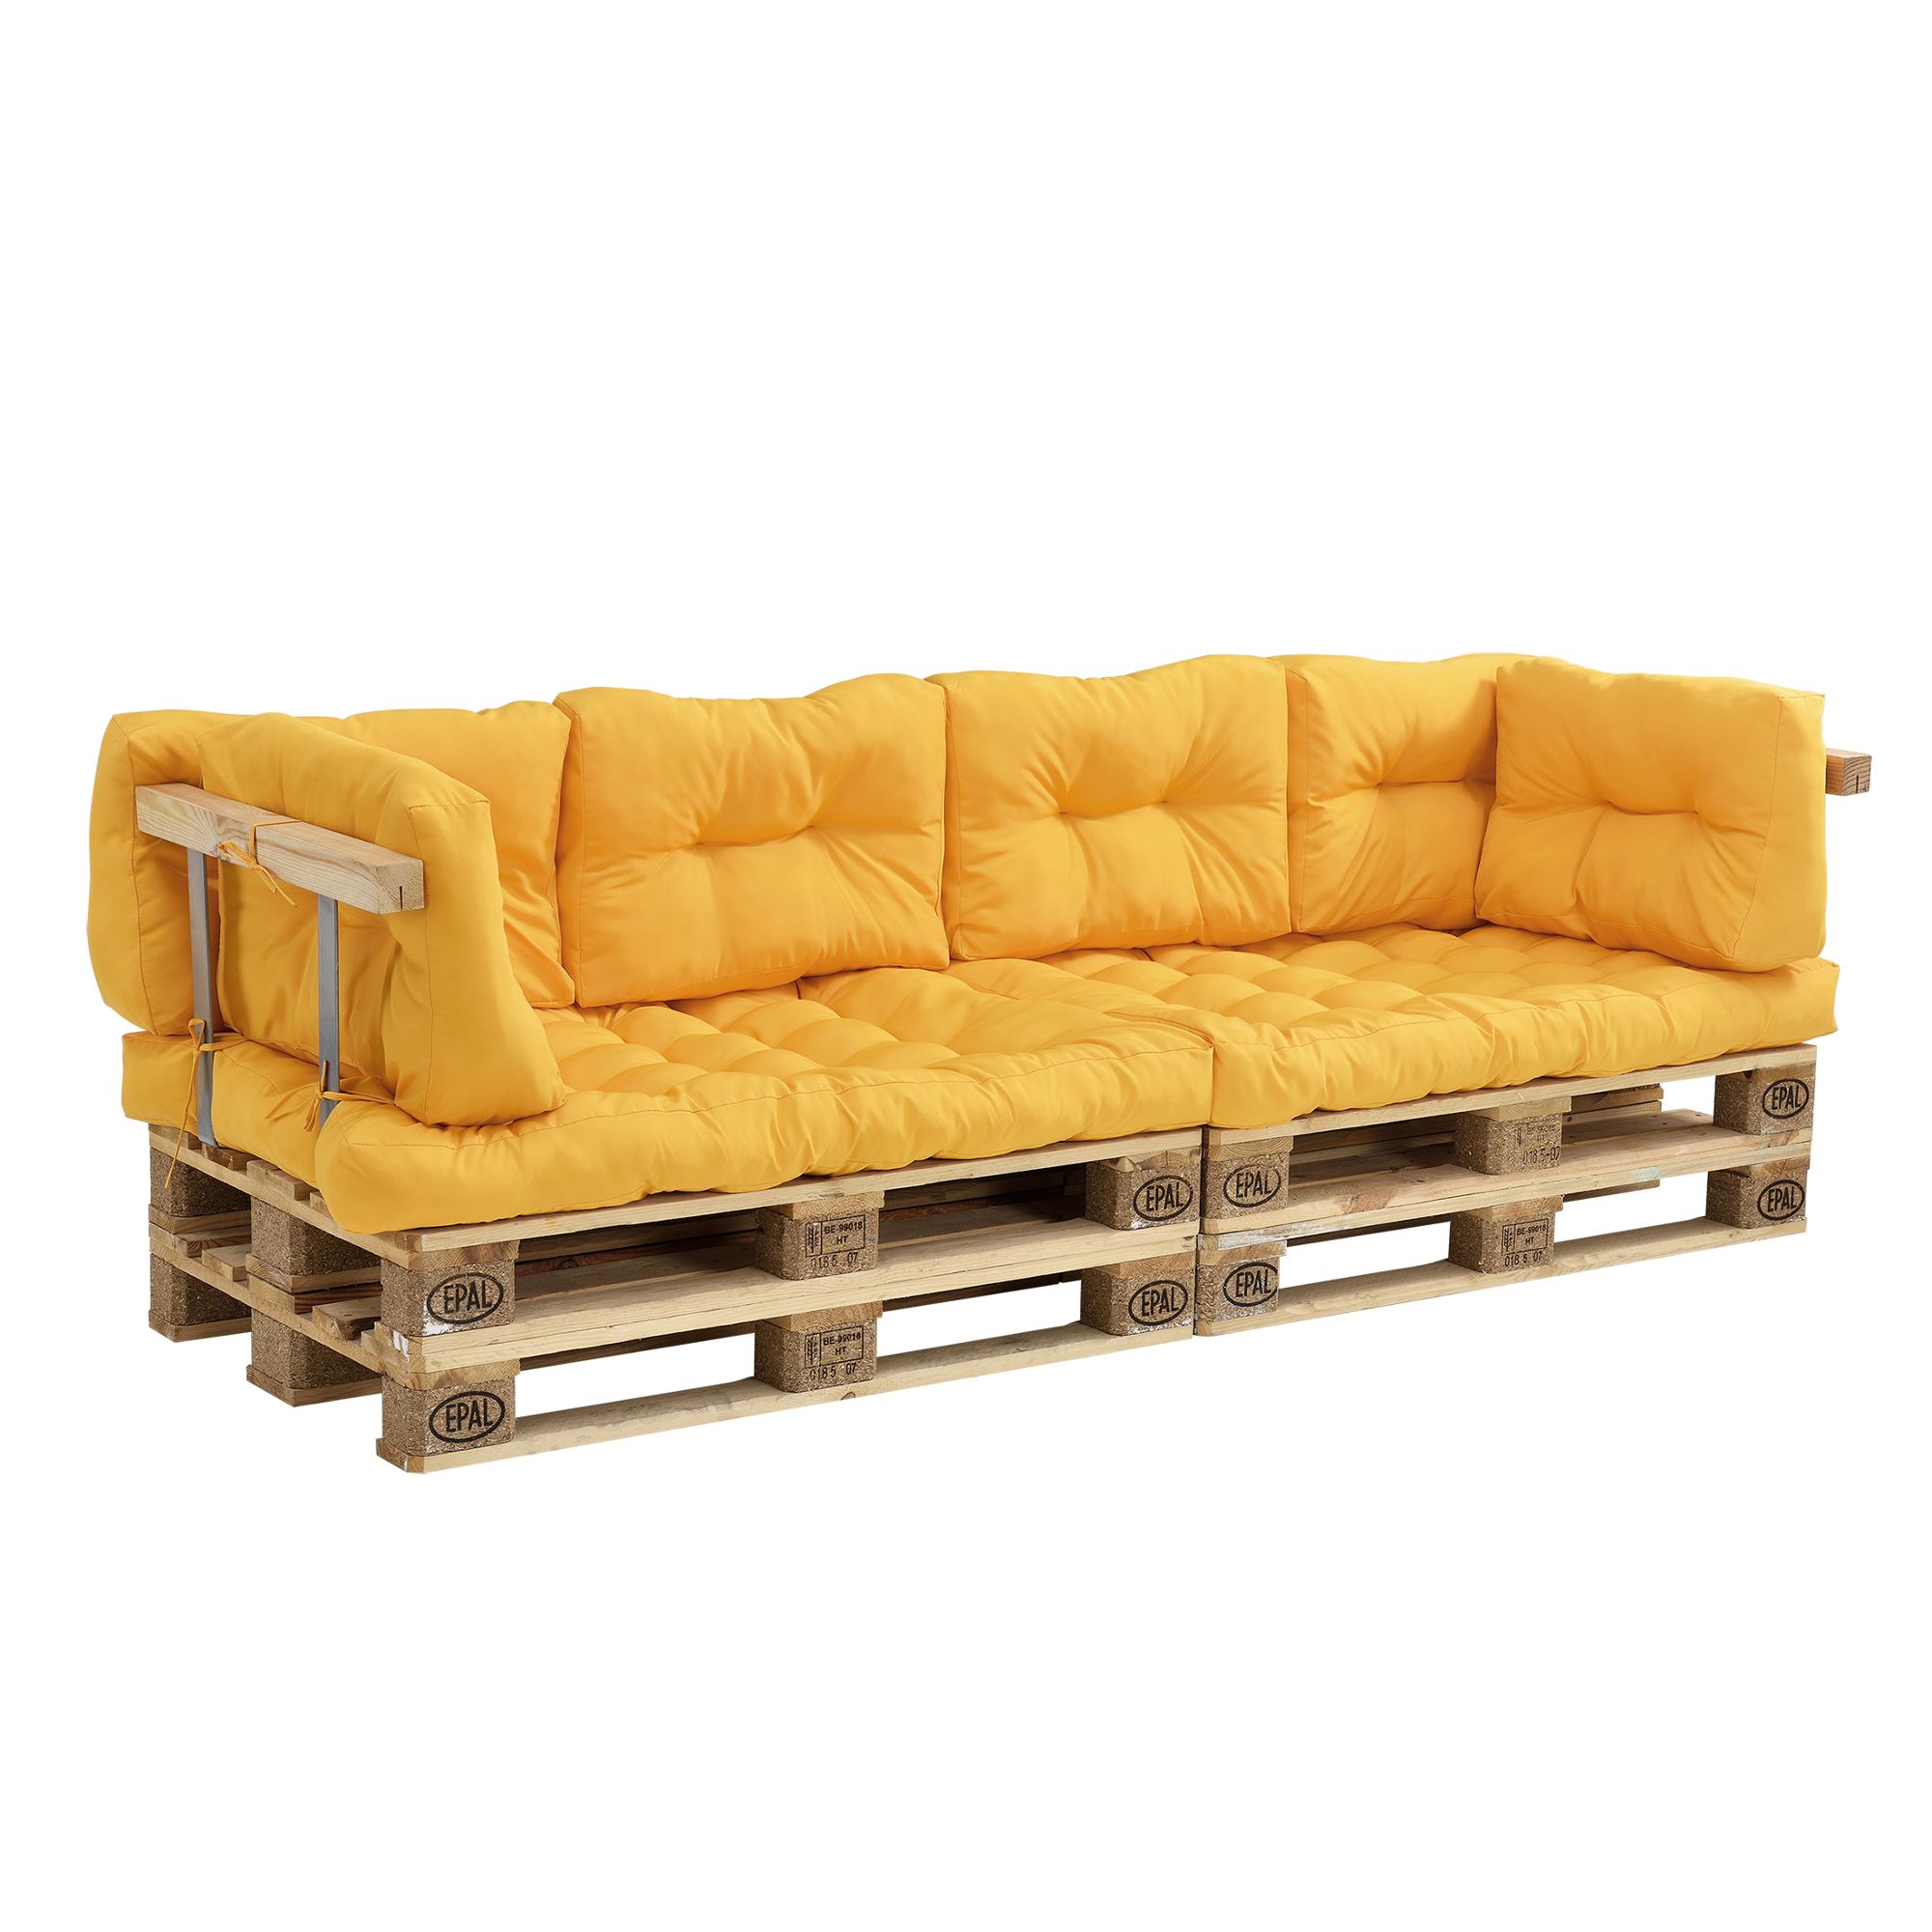 [en.casa]® Paletový nábytek - kompletní sada - horčicově žlutá - model G - H.T. Trade Service GmbH & Co. KG